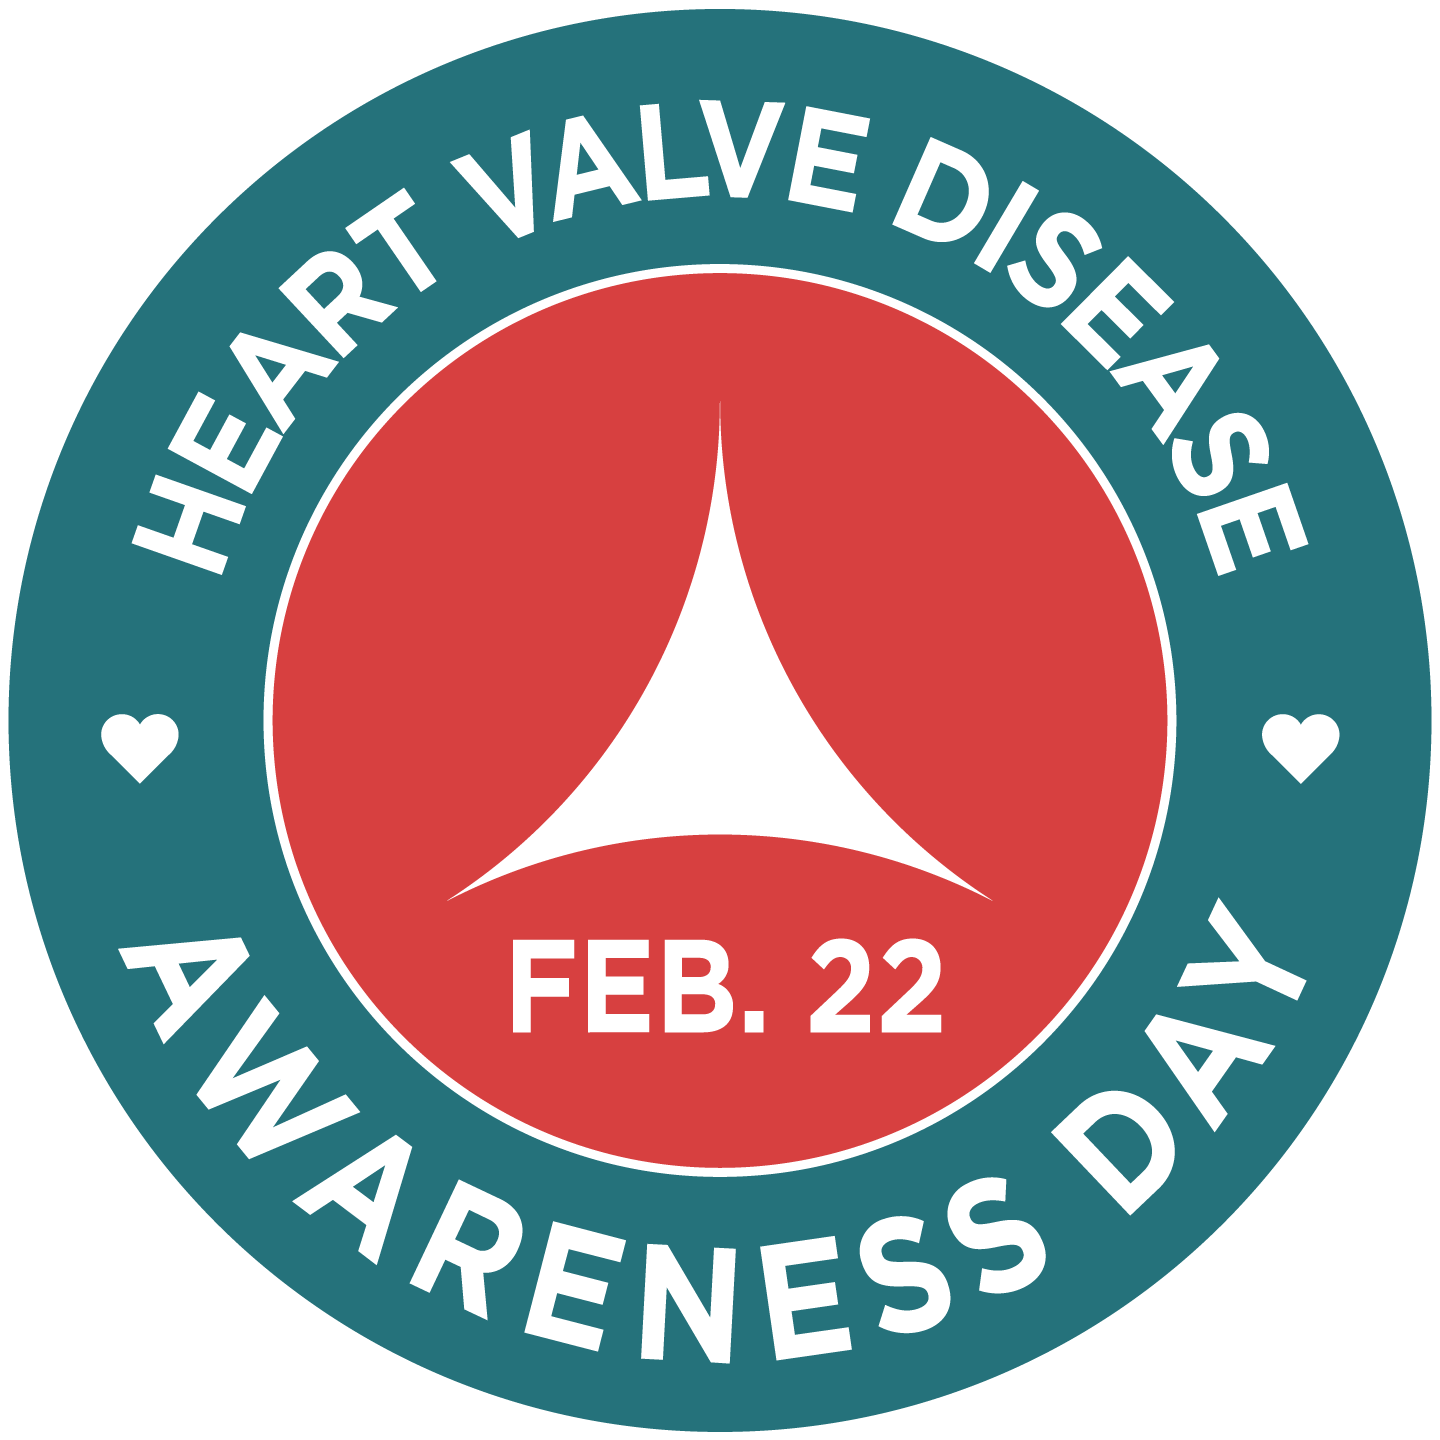 Heart Valve Disease Awareness Day American Heart Association